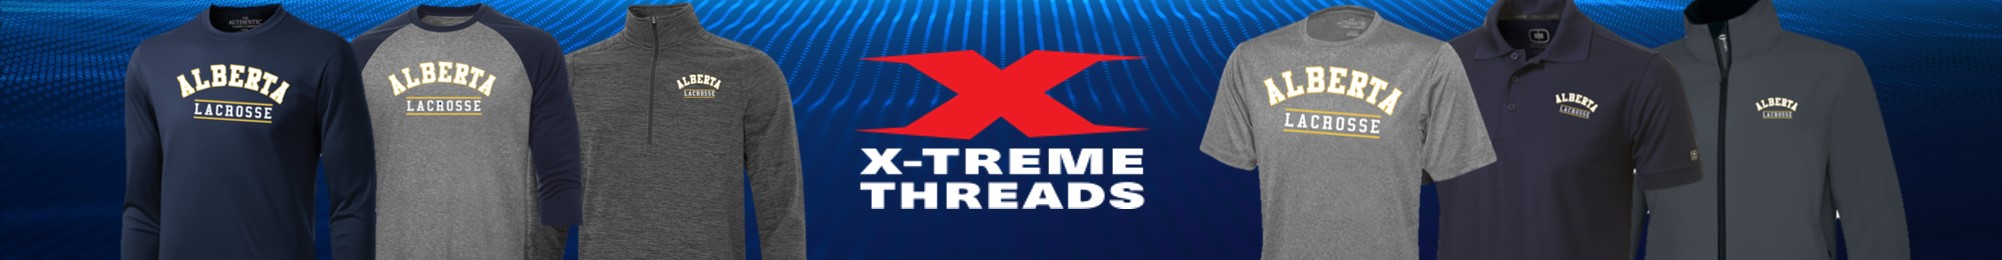 Xtreme Threads